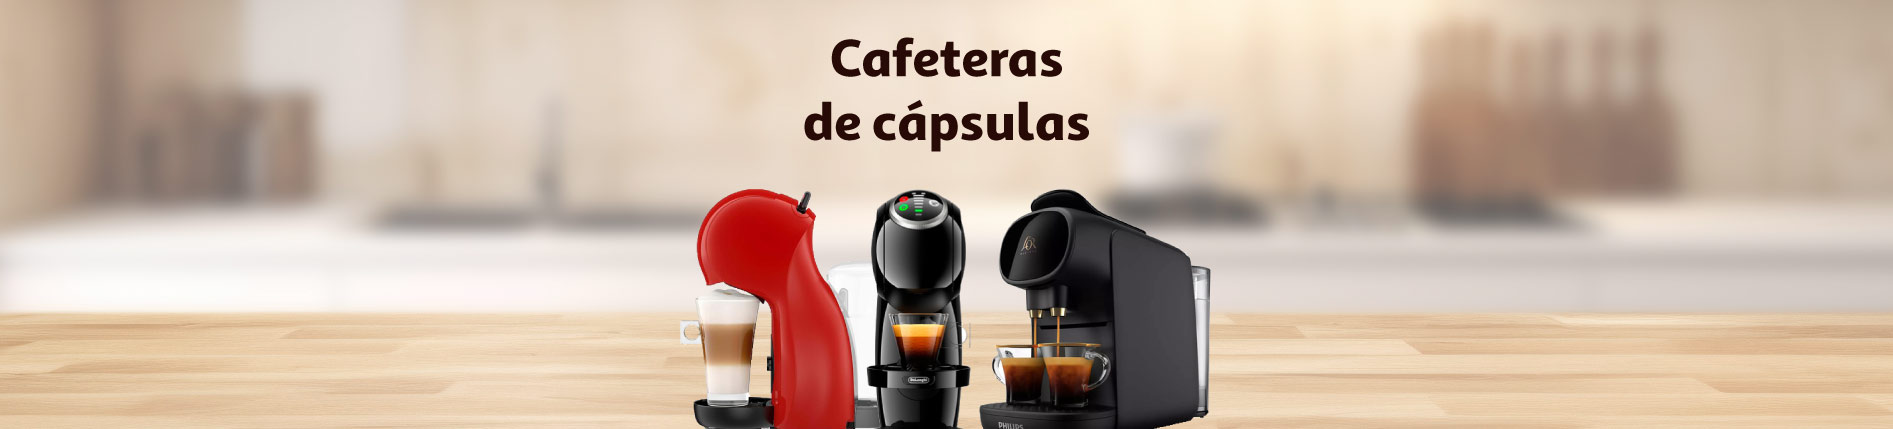 Cafeteras - Categorías - Alcampo supermercado online